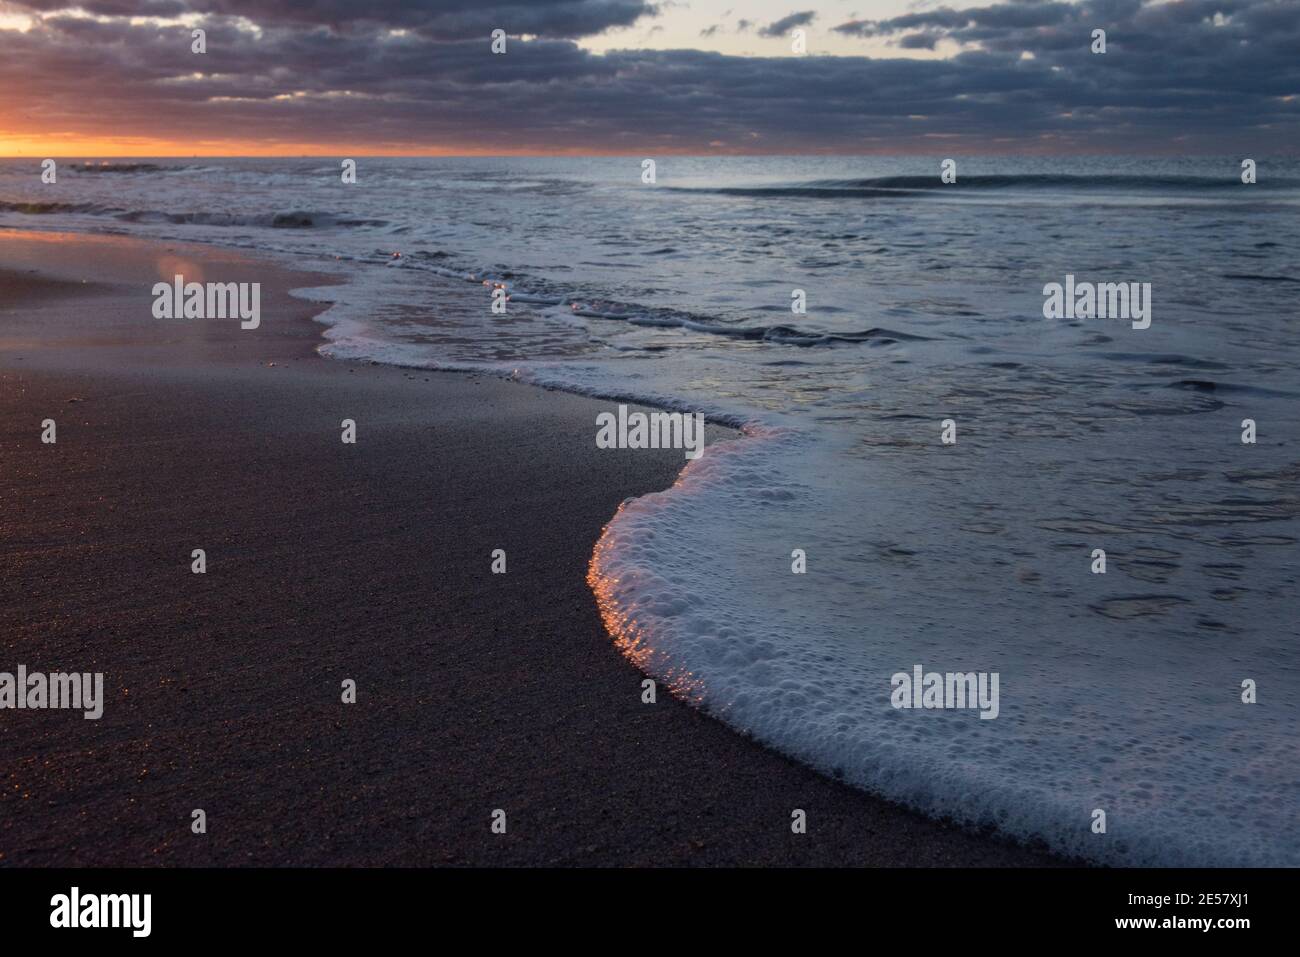 La lumière du soleil brille sur la mer et le bord de l'eau tandis qu'une nouvelle journée commence à Atlantic Beach, en Caroline du Nord. Banque D'Images